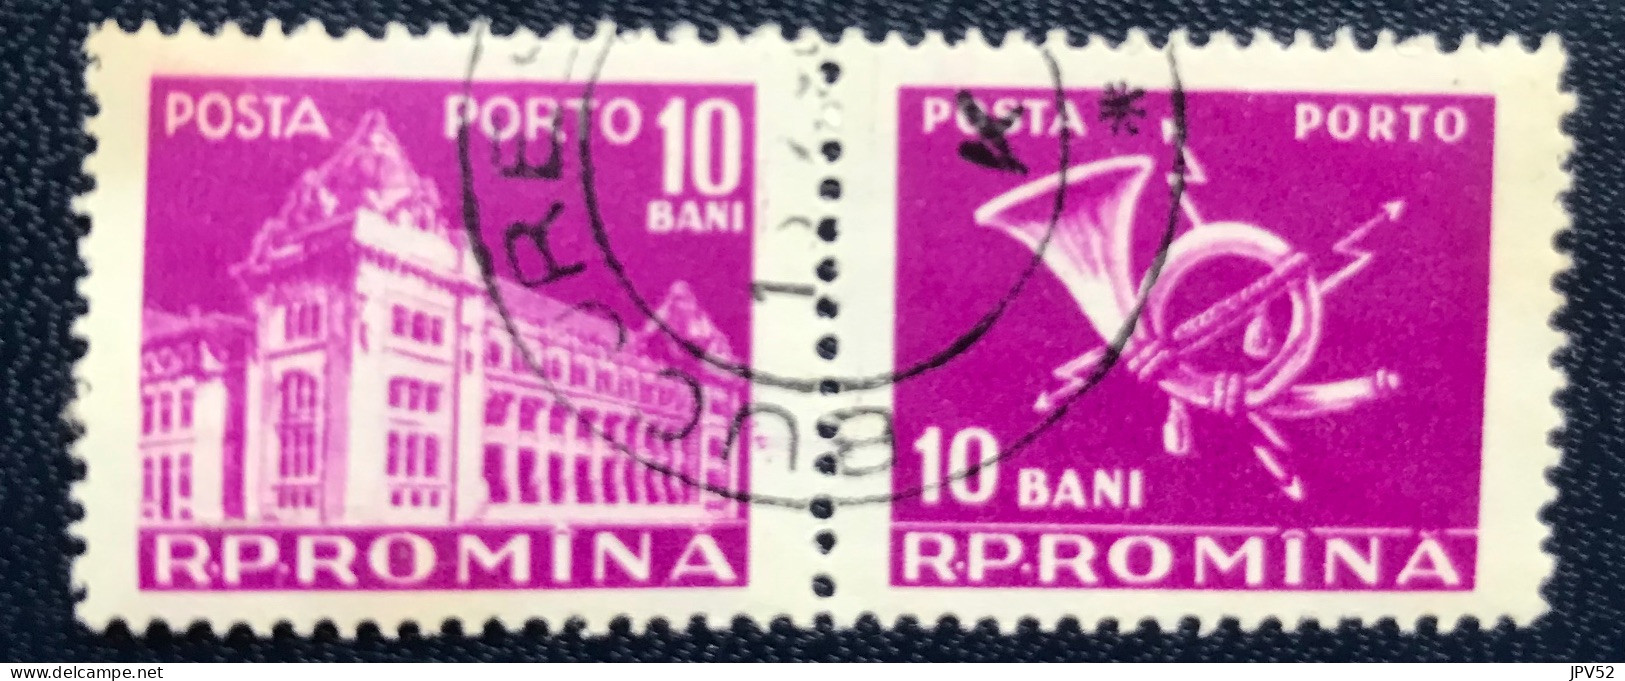 Romana - Roemenië - C14/54 - 1957 - (°)used - Michel 103 - Postkantoor & Posthoorn & Bliksem - Strafport